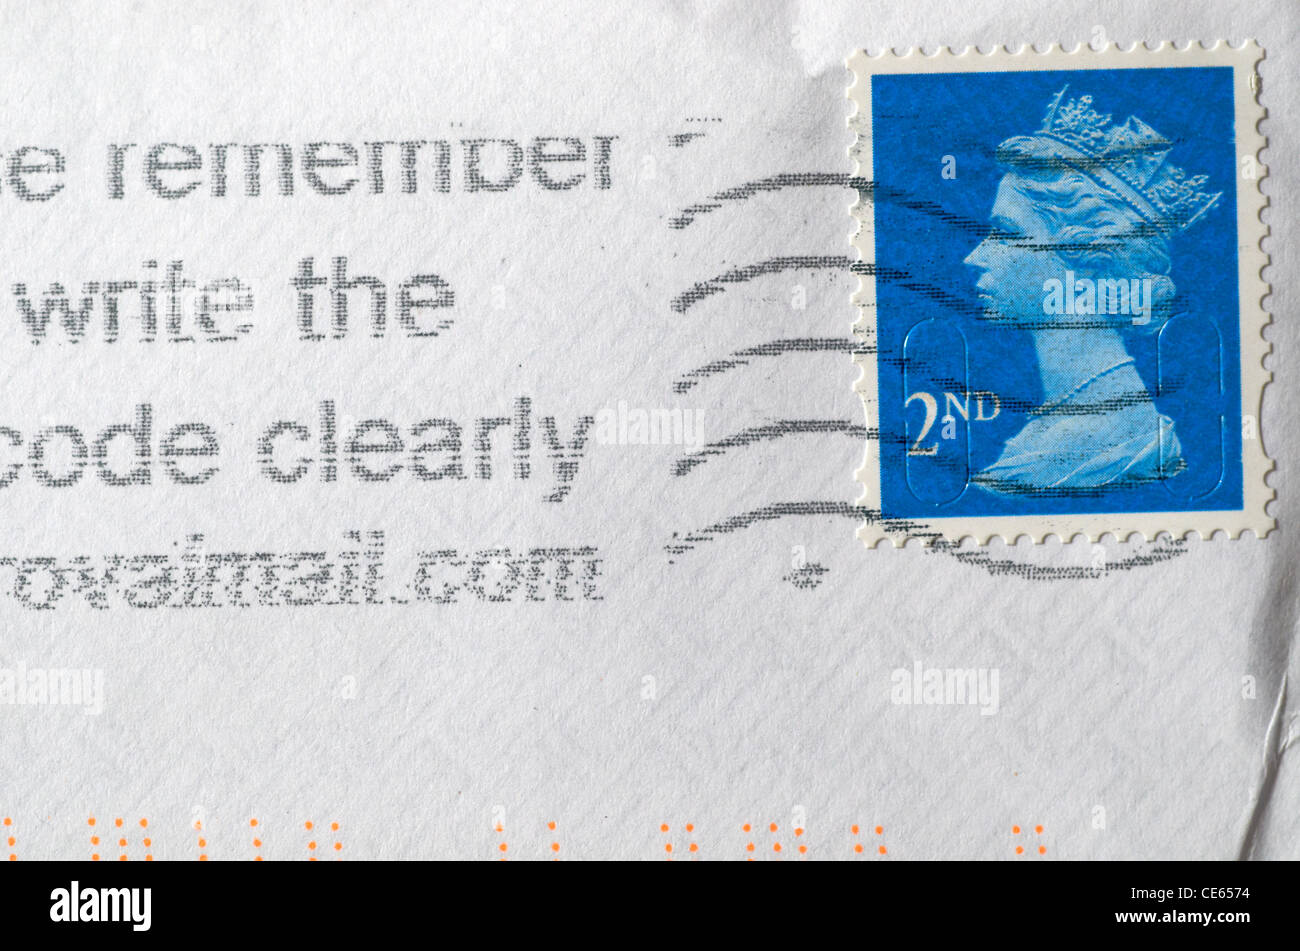 Affranchies de timbres-poste de deuxième classe sur une enveloppe. Banque D'Images